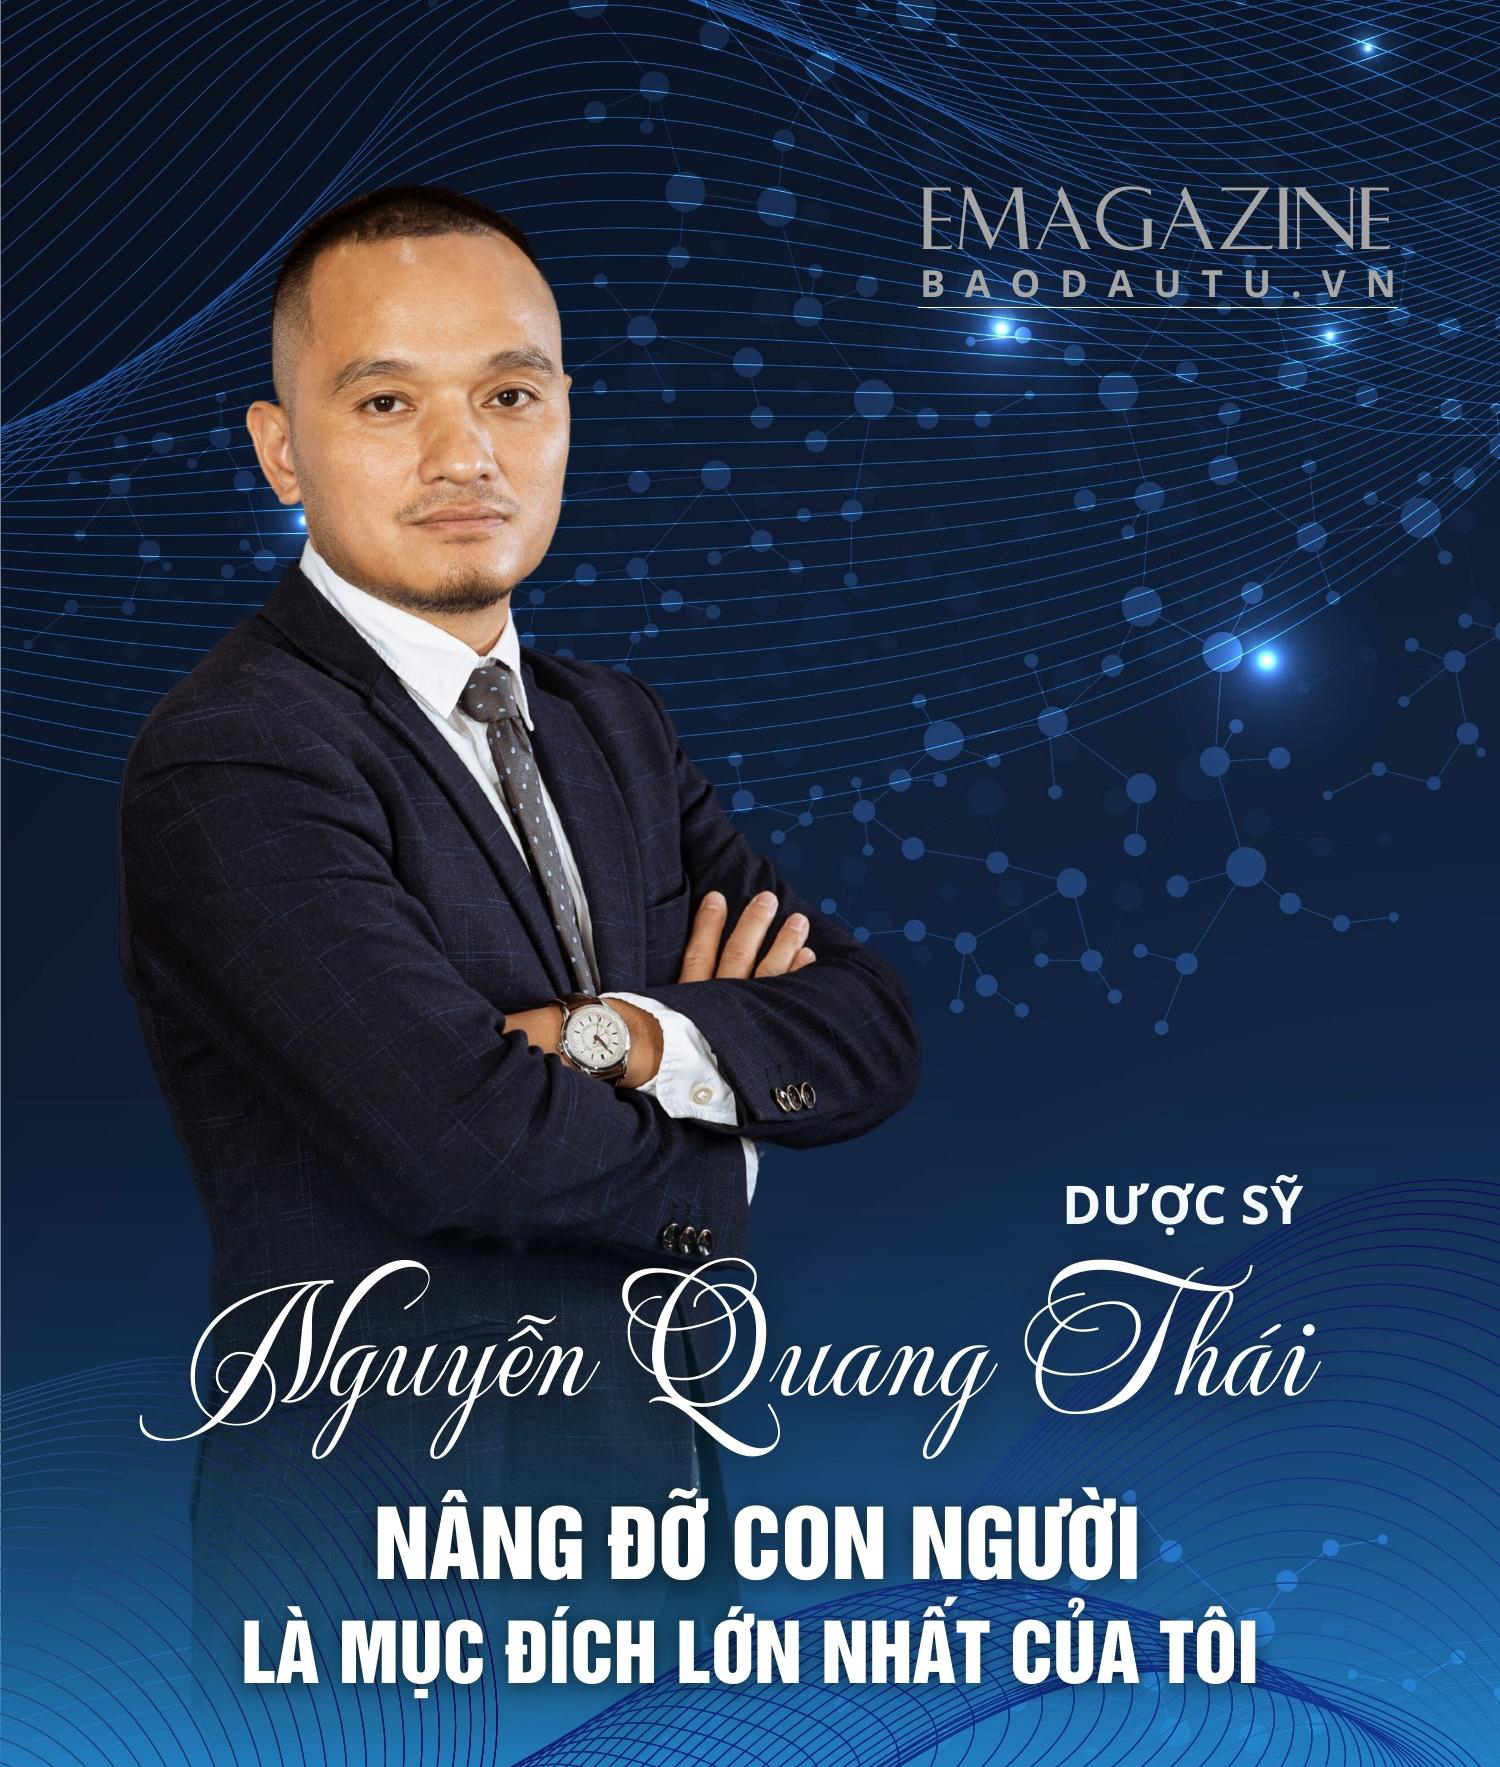 Dược sỹ Nguyễn Quang Thái: Nâng đỡ con người là mục đích lớn nhất của tôi